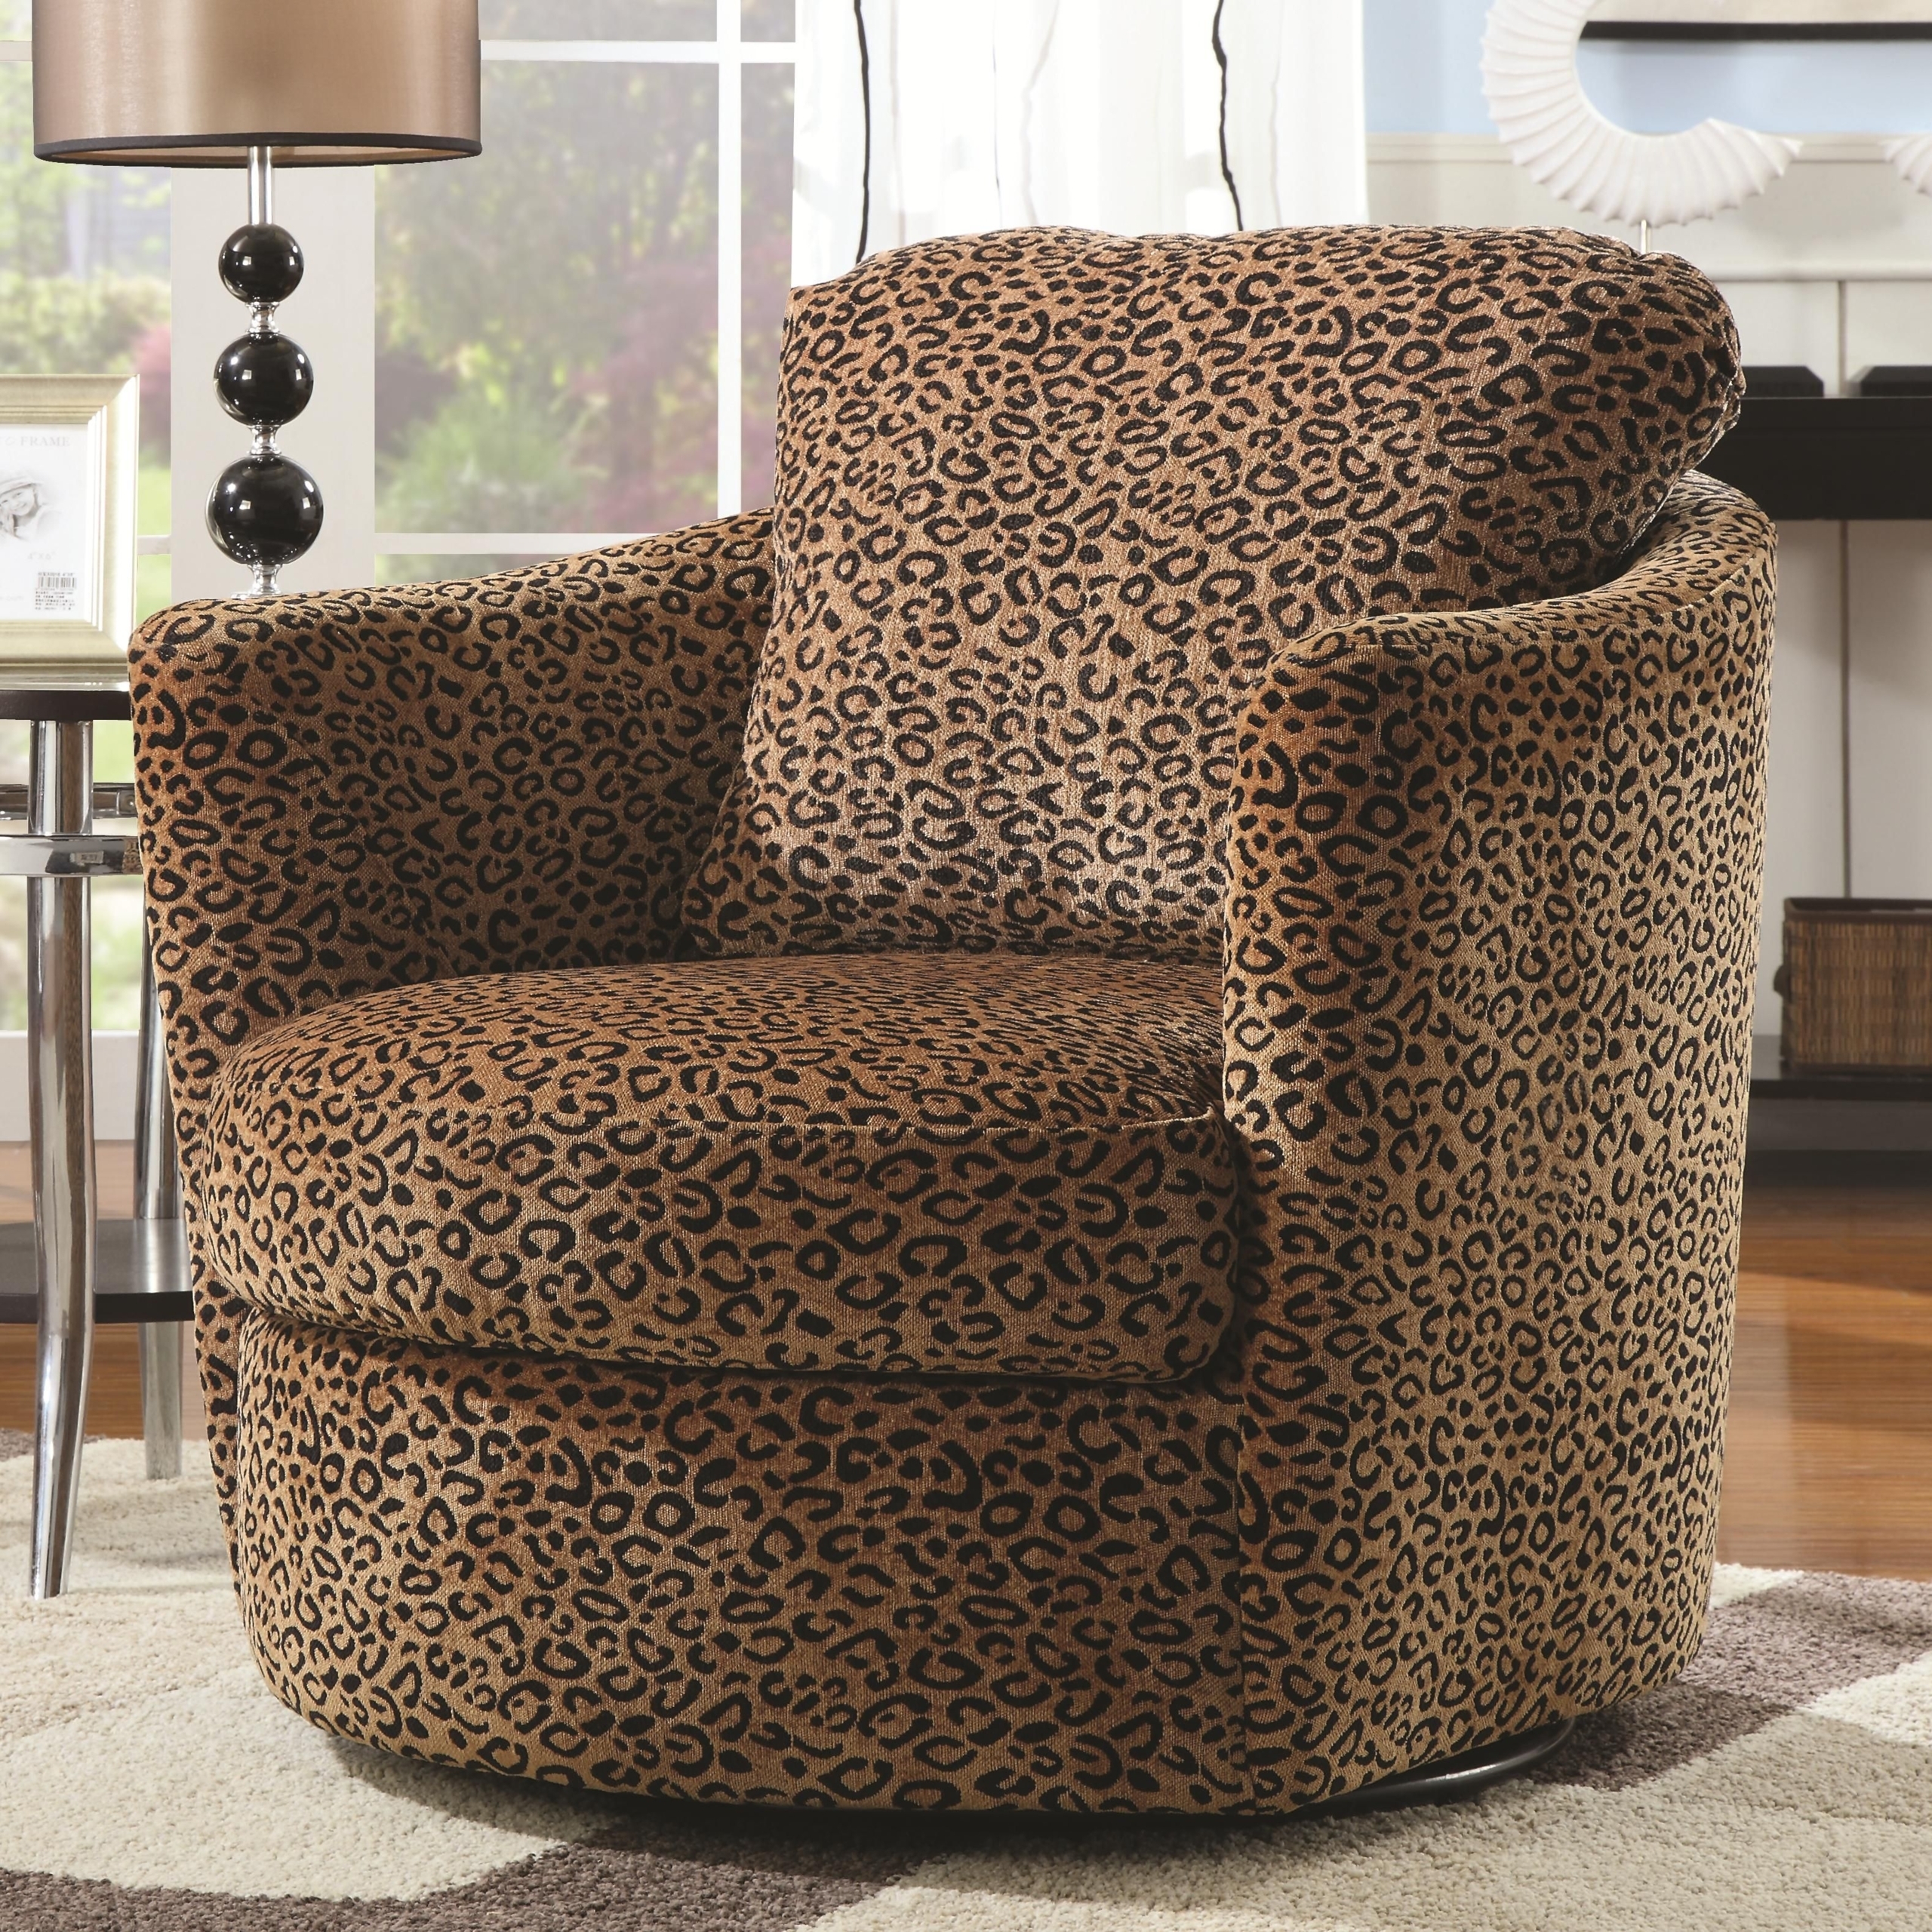 Кресло домашнее. Кресло с леопардовой обшивкой. Материал для кресла. Кресло тканевое с кругами. Шармель кресло.